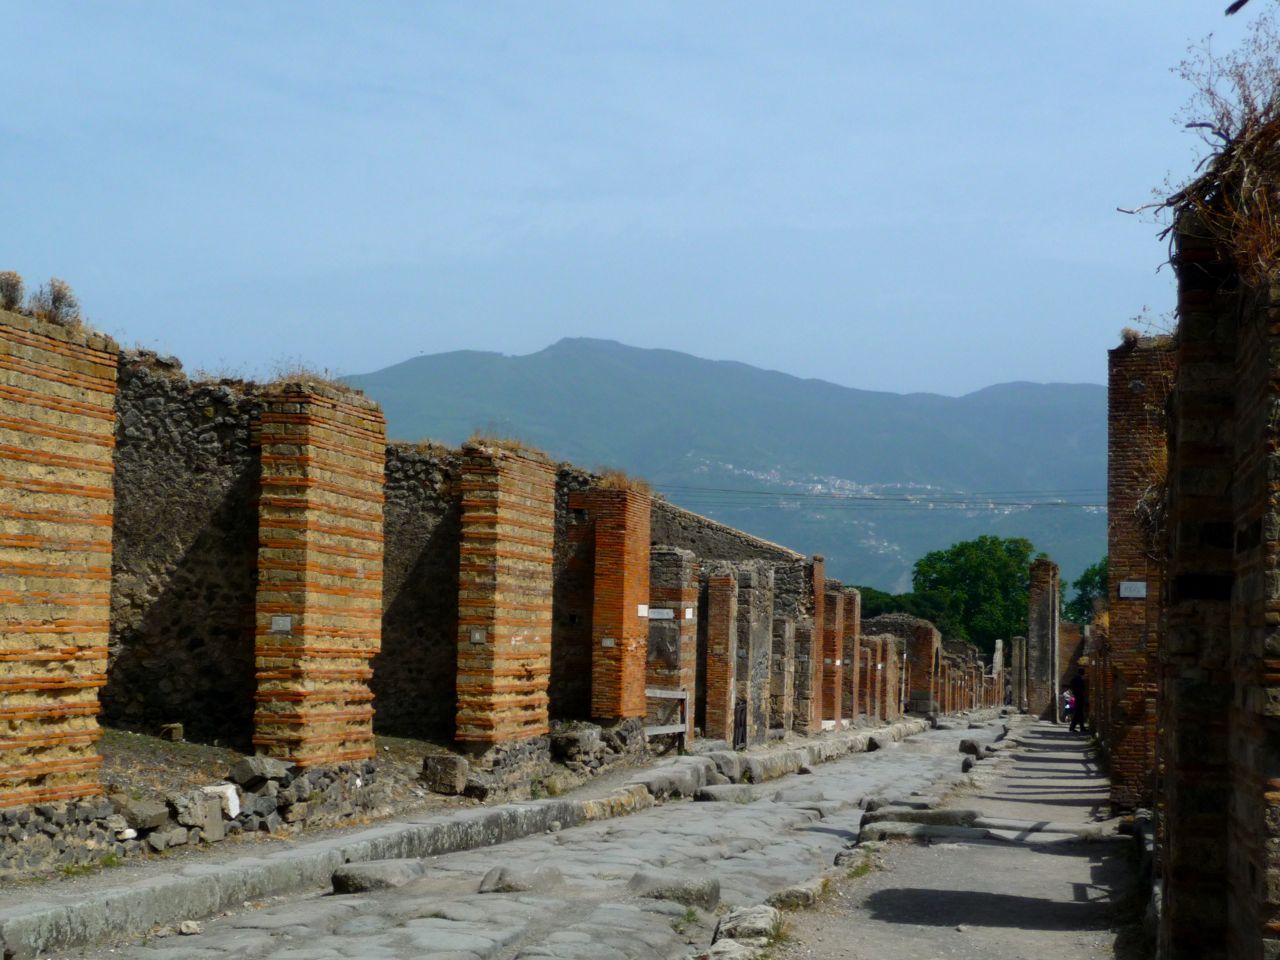 Visiting Pompeii and Herculaneum